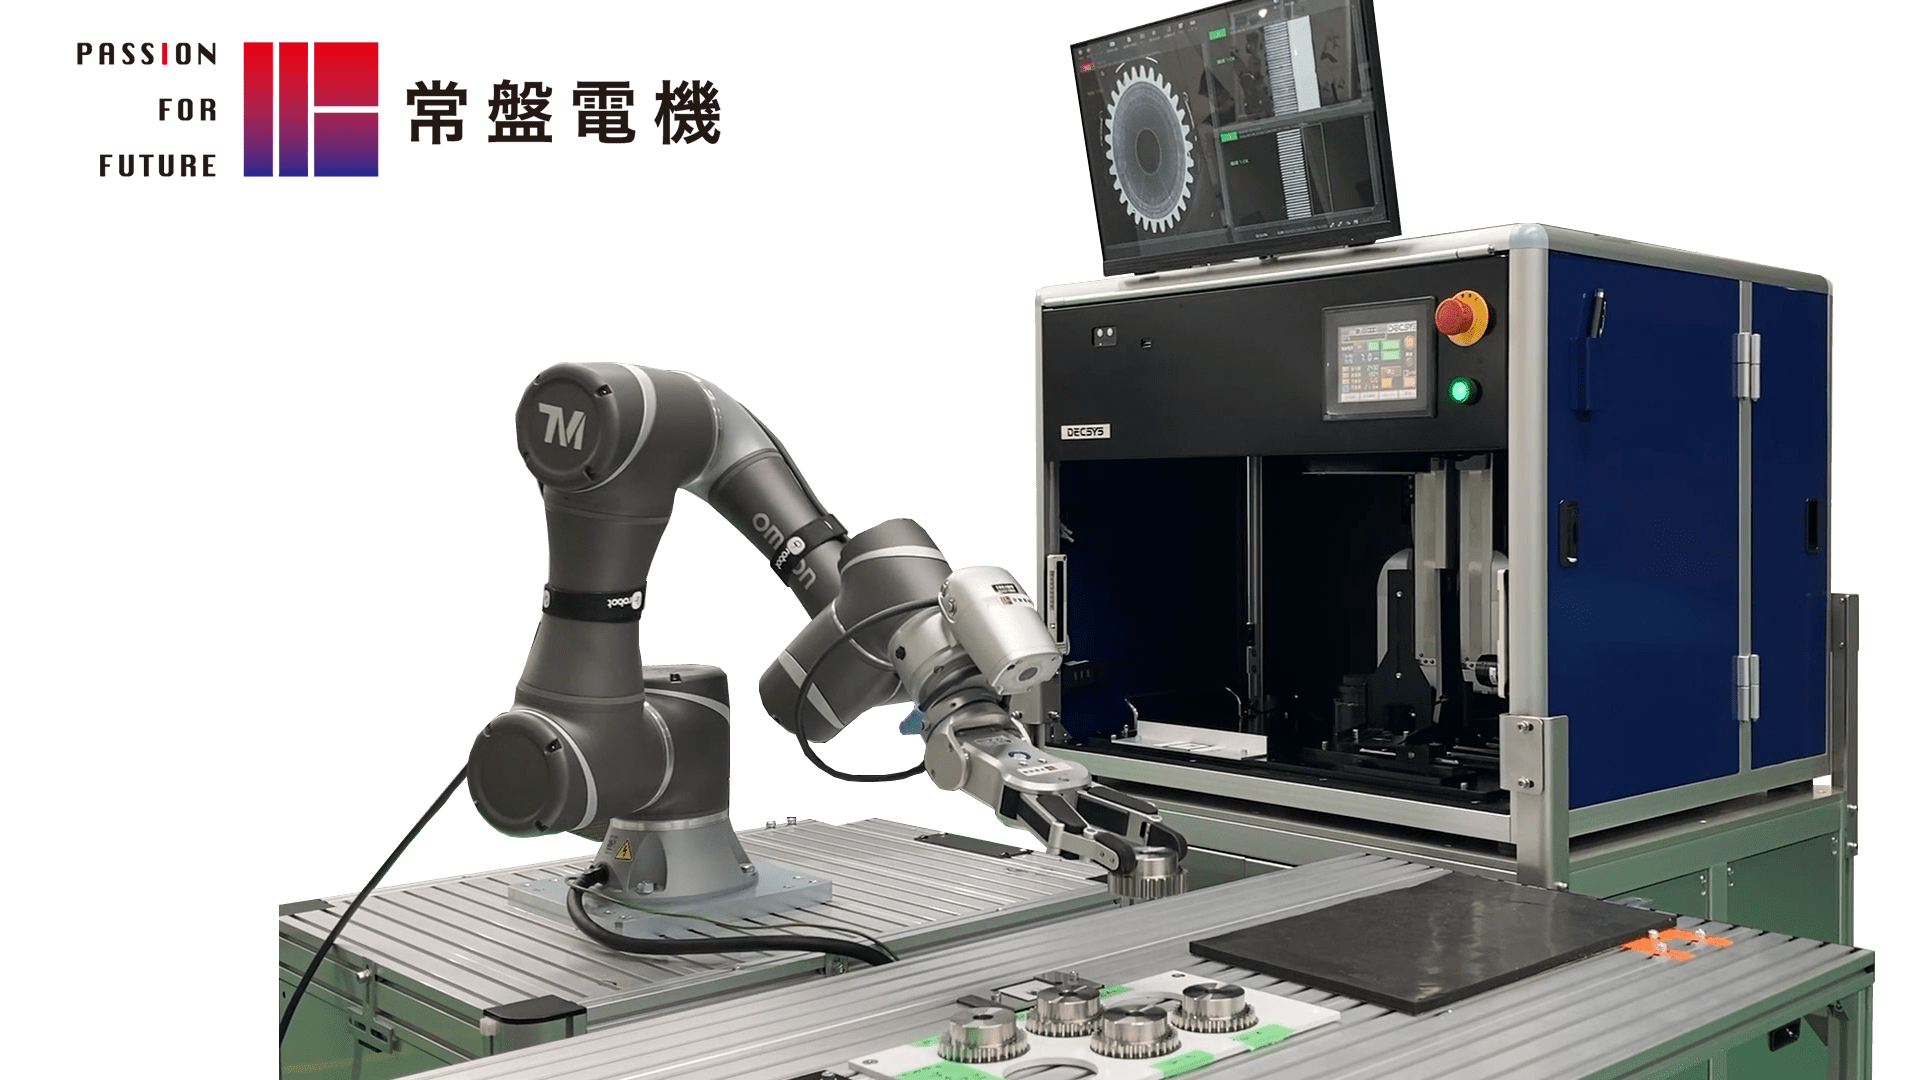 常盤電機社 協調ロボット外観検査システム 
Simple Robotization SA-JR